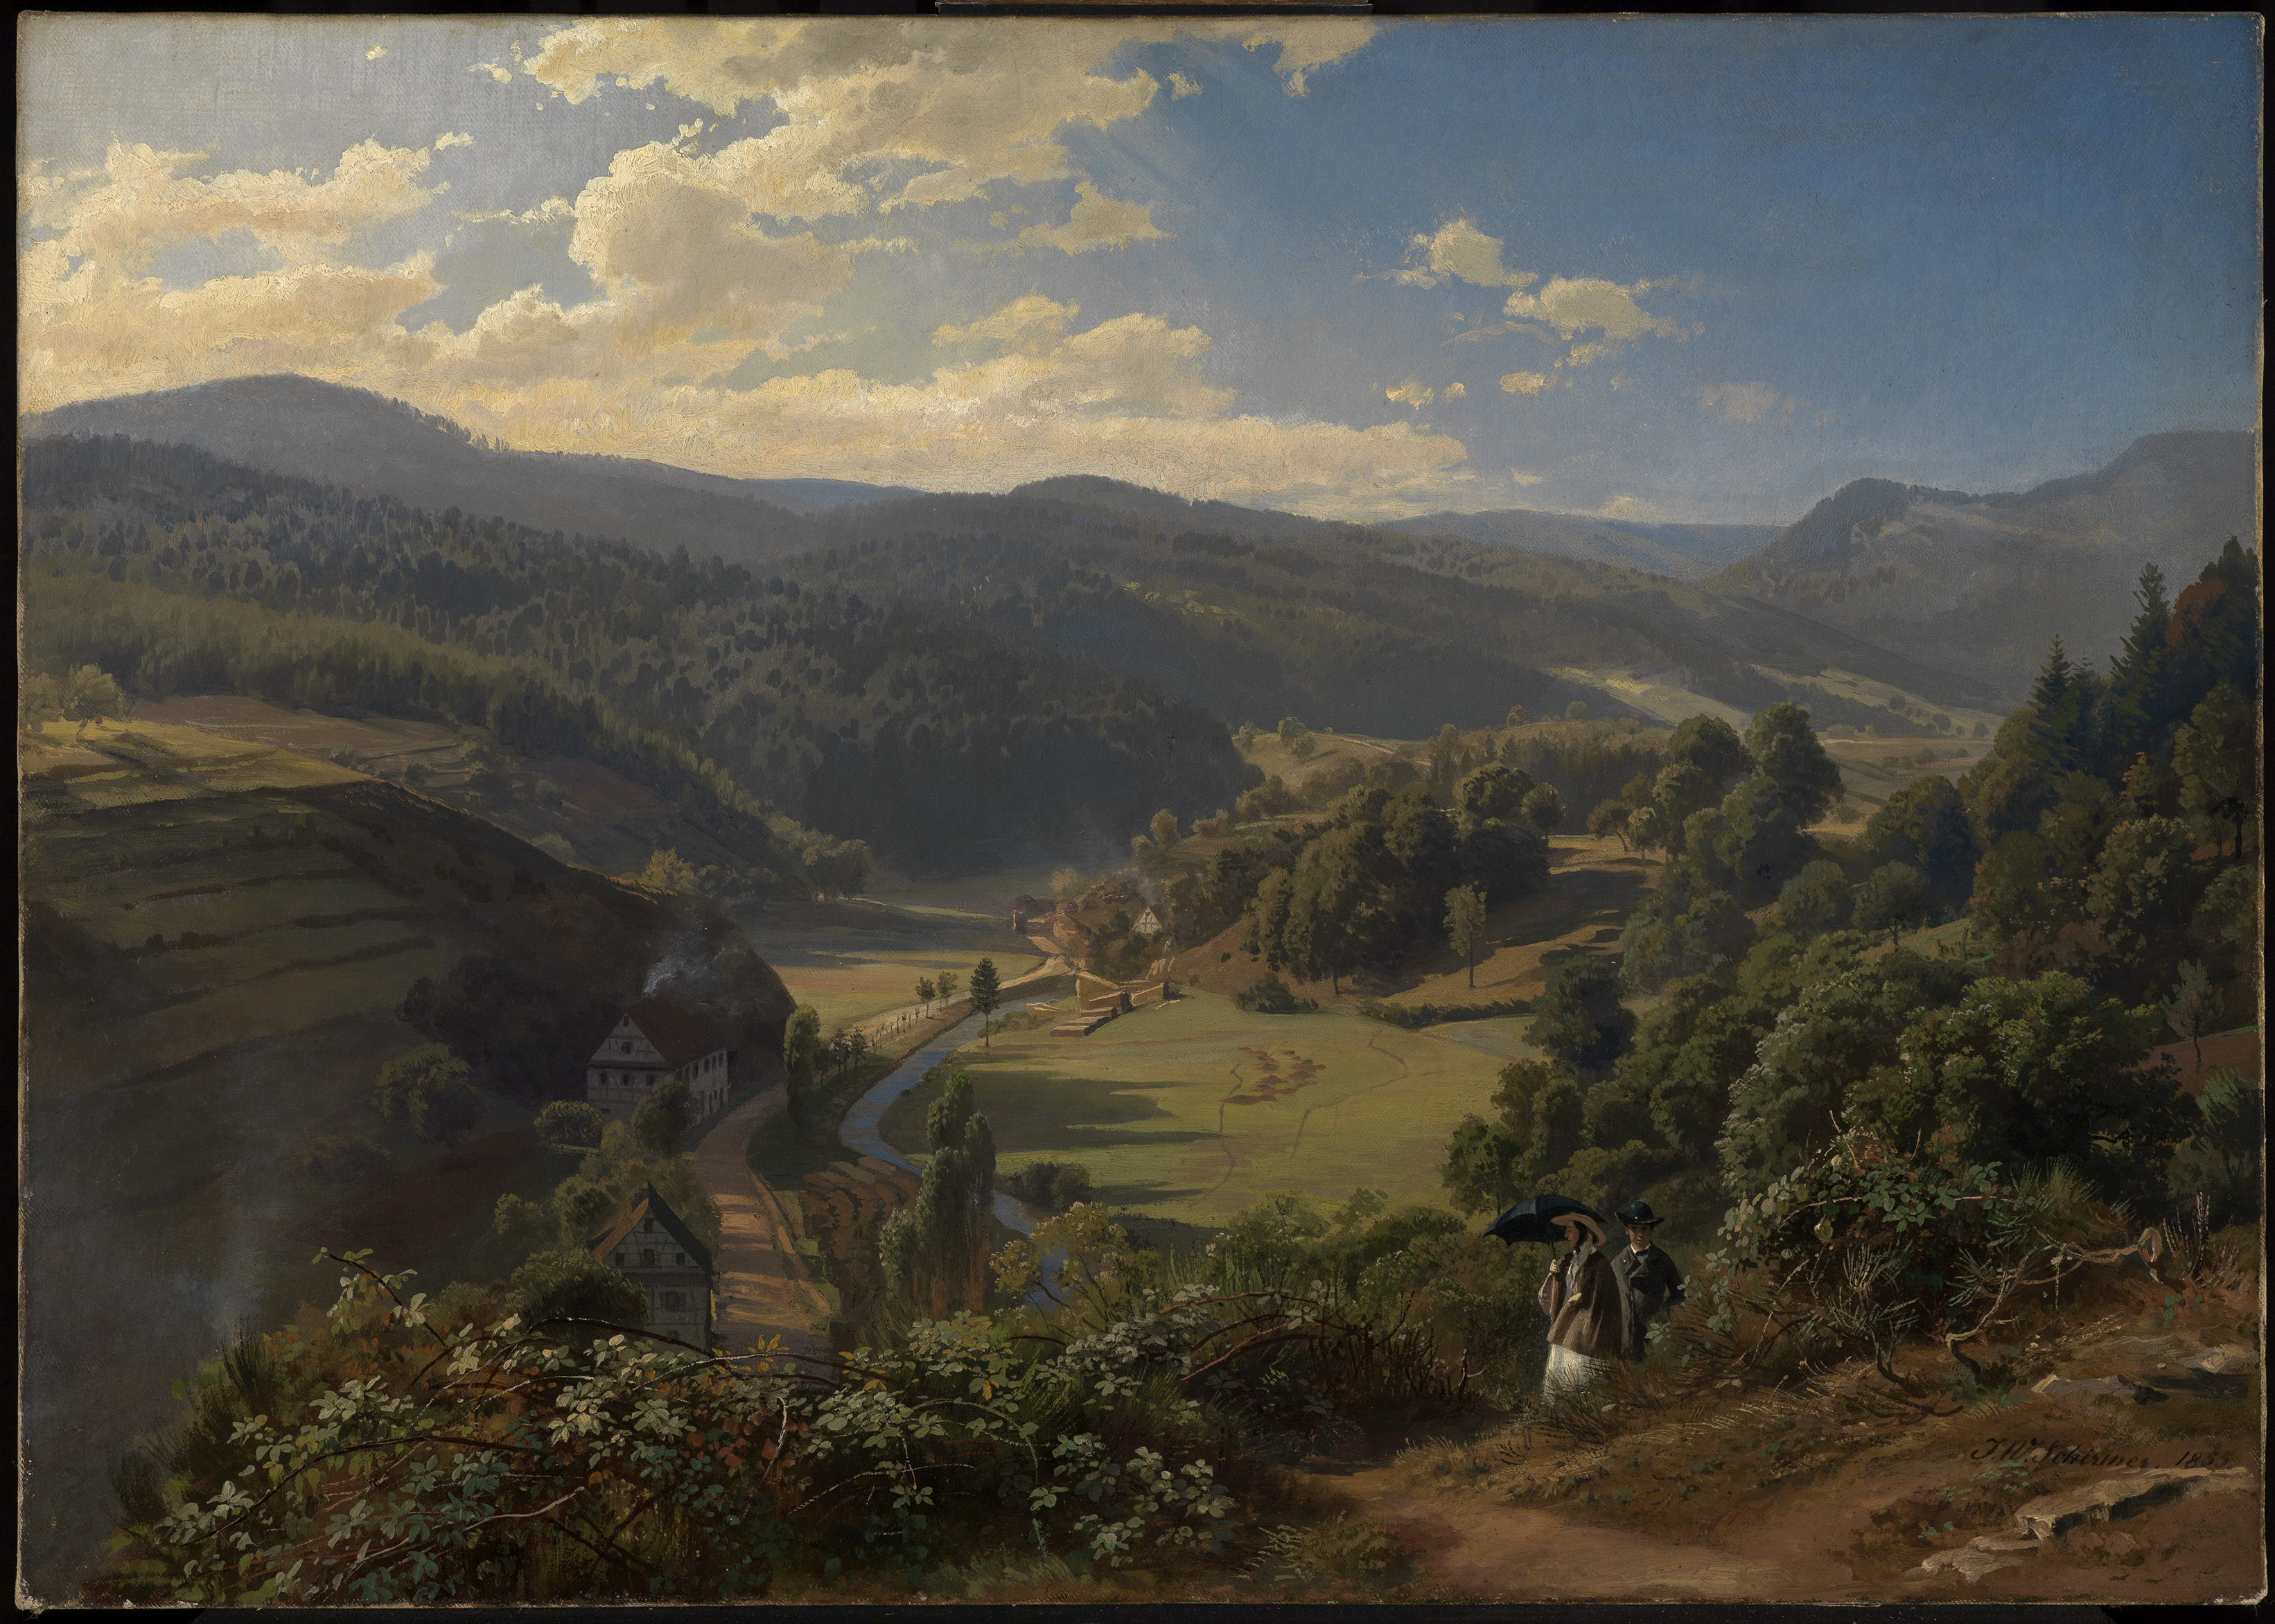 Das Geroldsauer Tal bei Baden-Baden by Johan Wilhelm Schirmer - 1855 - 59,5 x 82,5 cm Staatliche Kunsthalle Karlsruhe